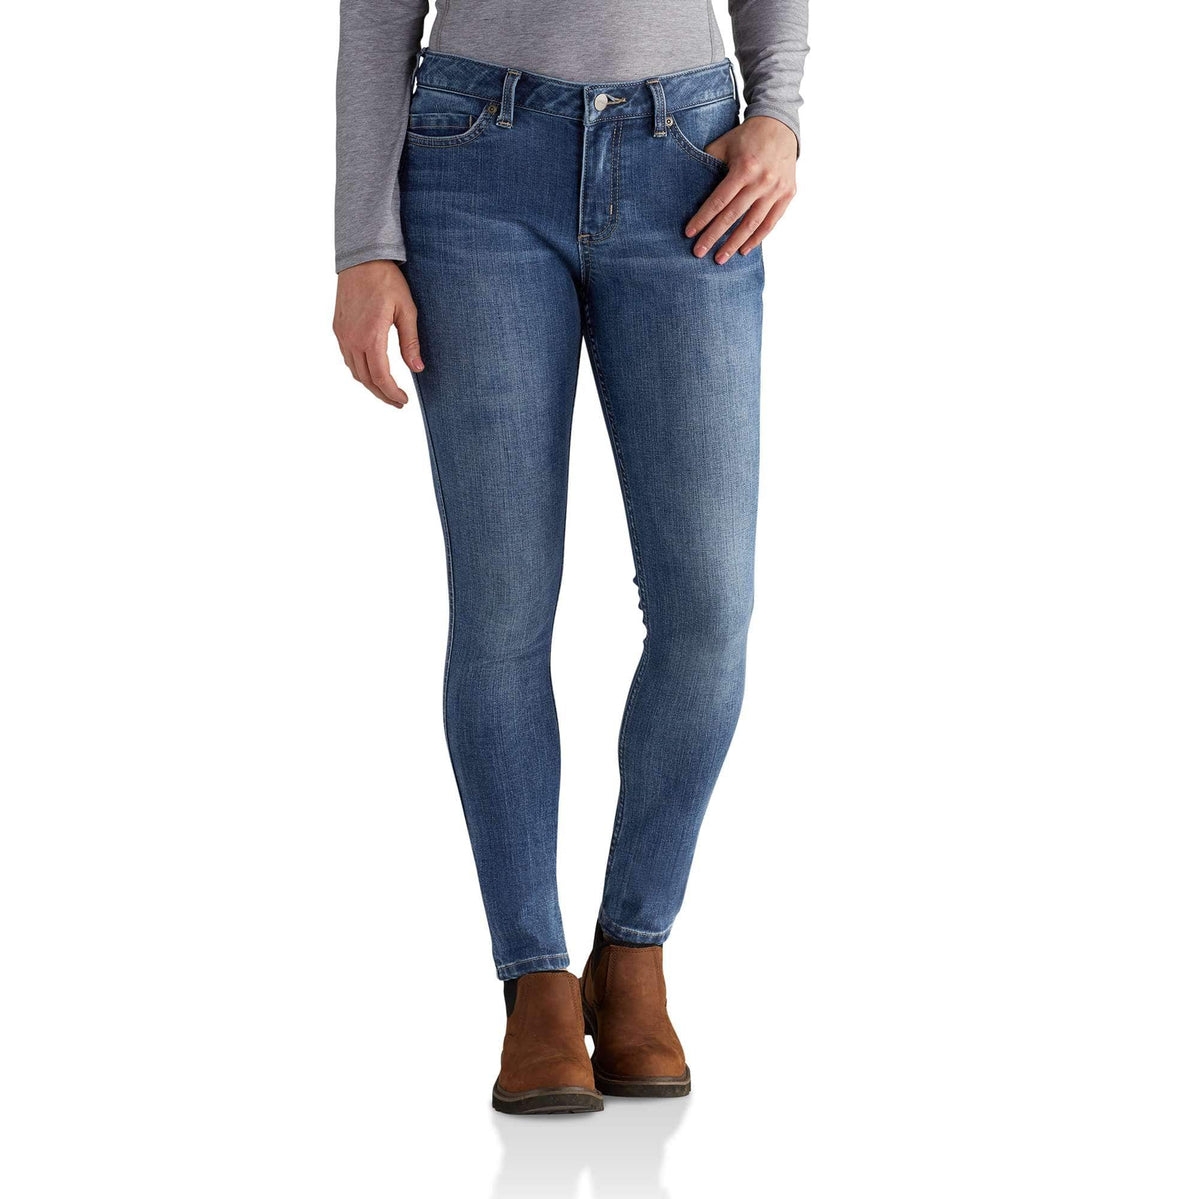 Carhartt Women's Slim-Fit Crawford Pants 103224